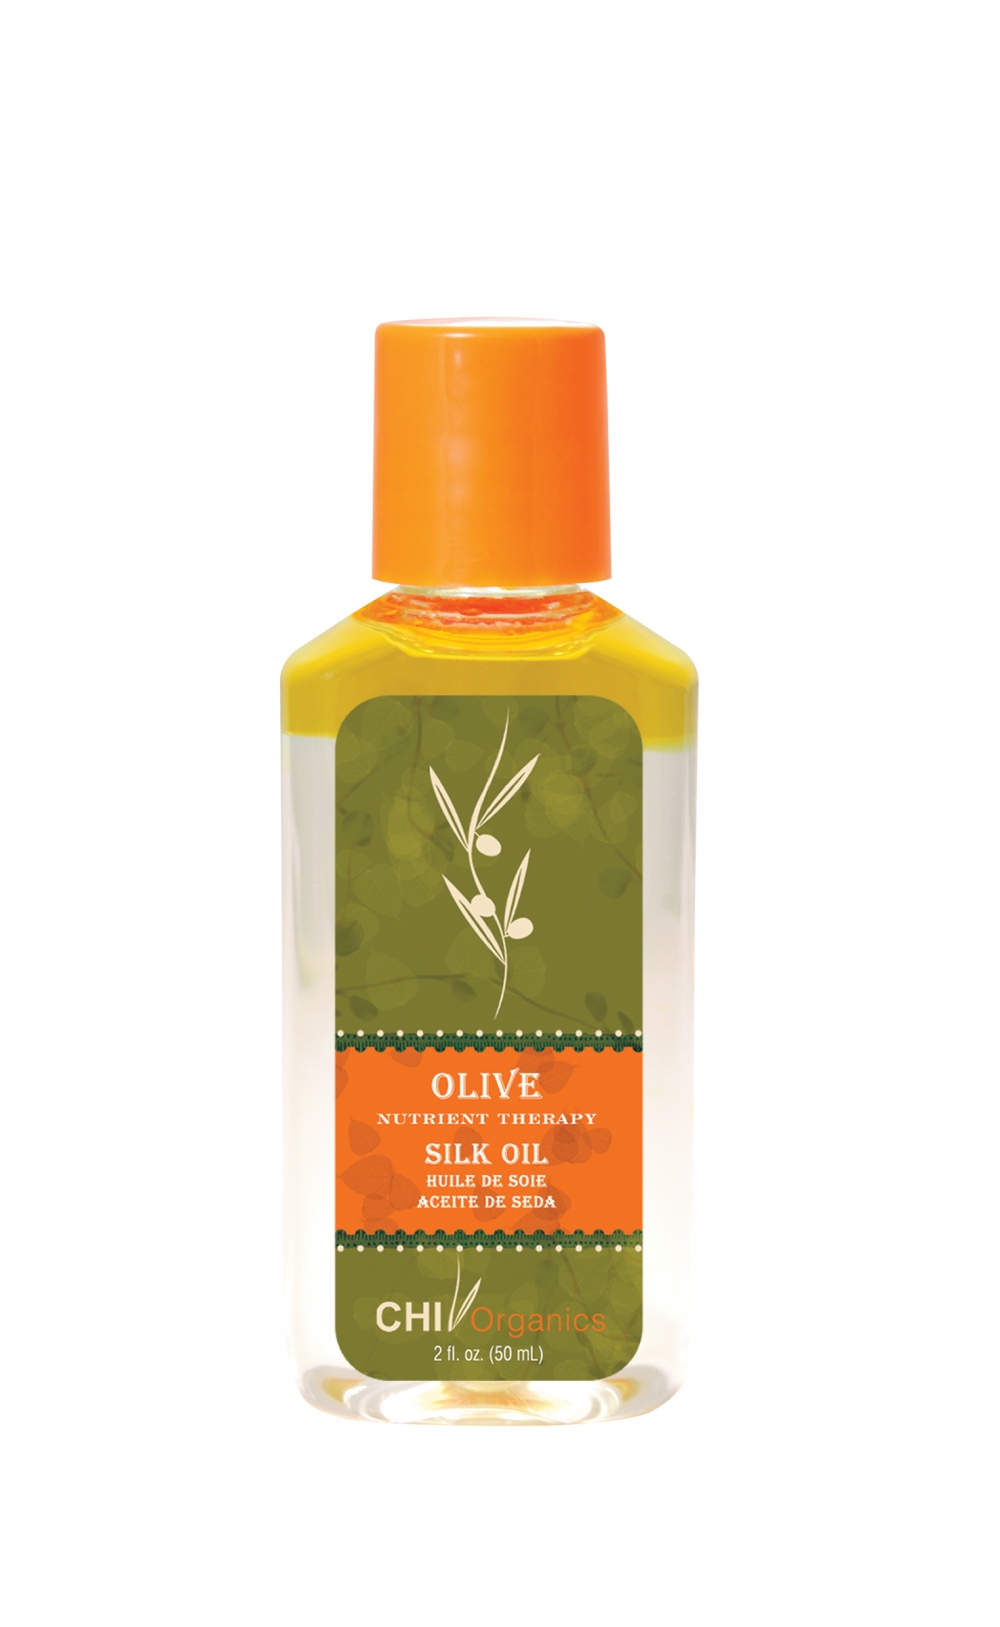 Økologisk silke olje, forsterket med olivenolje, i praktisk reisestørrelse! 